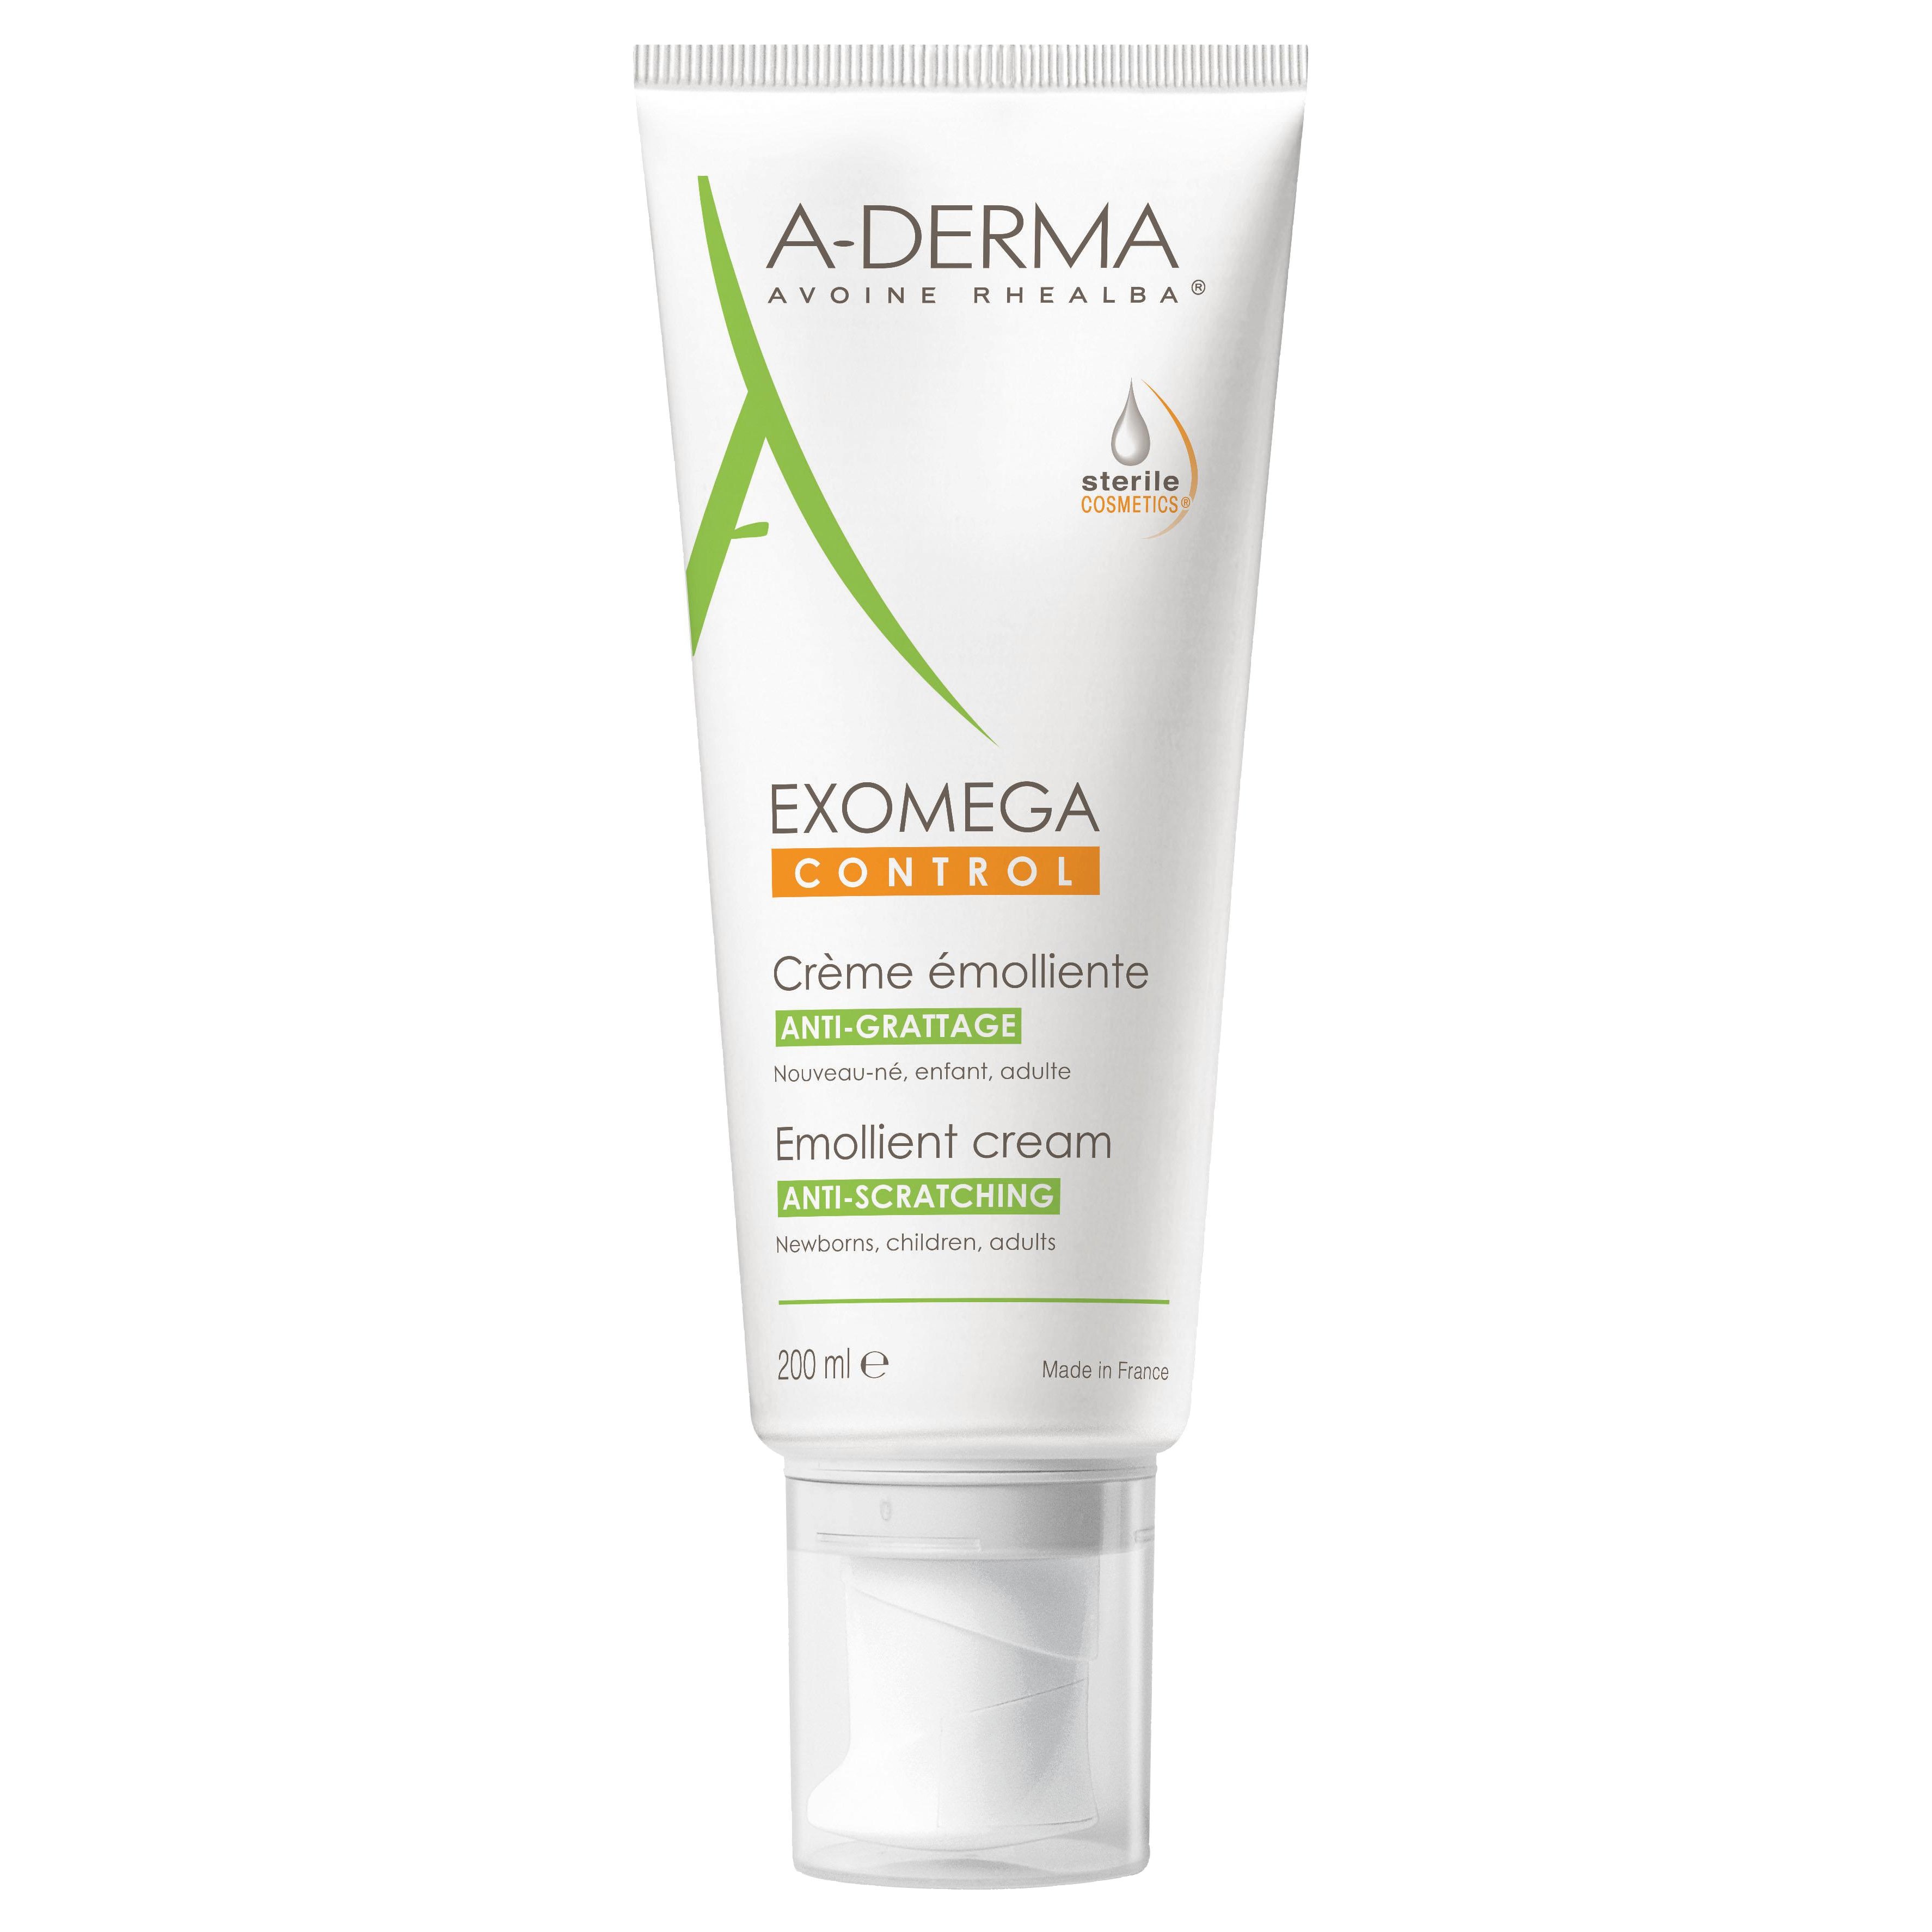 A-Derma Exomega Control Creme Emolliente Μαλακτική Καταπραϋντική Κρέμα για το Αίσθημα του Κνησμού, στο Ξηρό Δέρμα 200ml